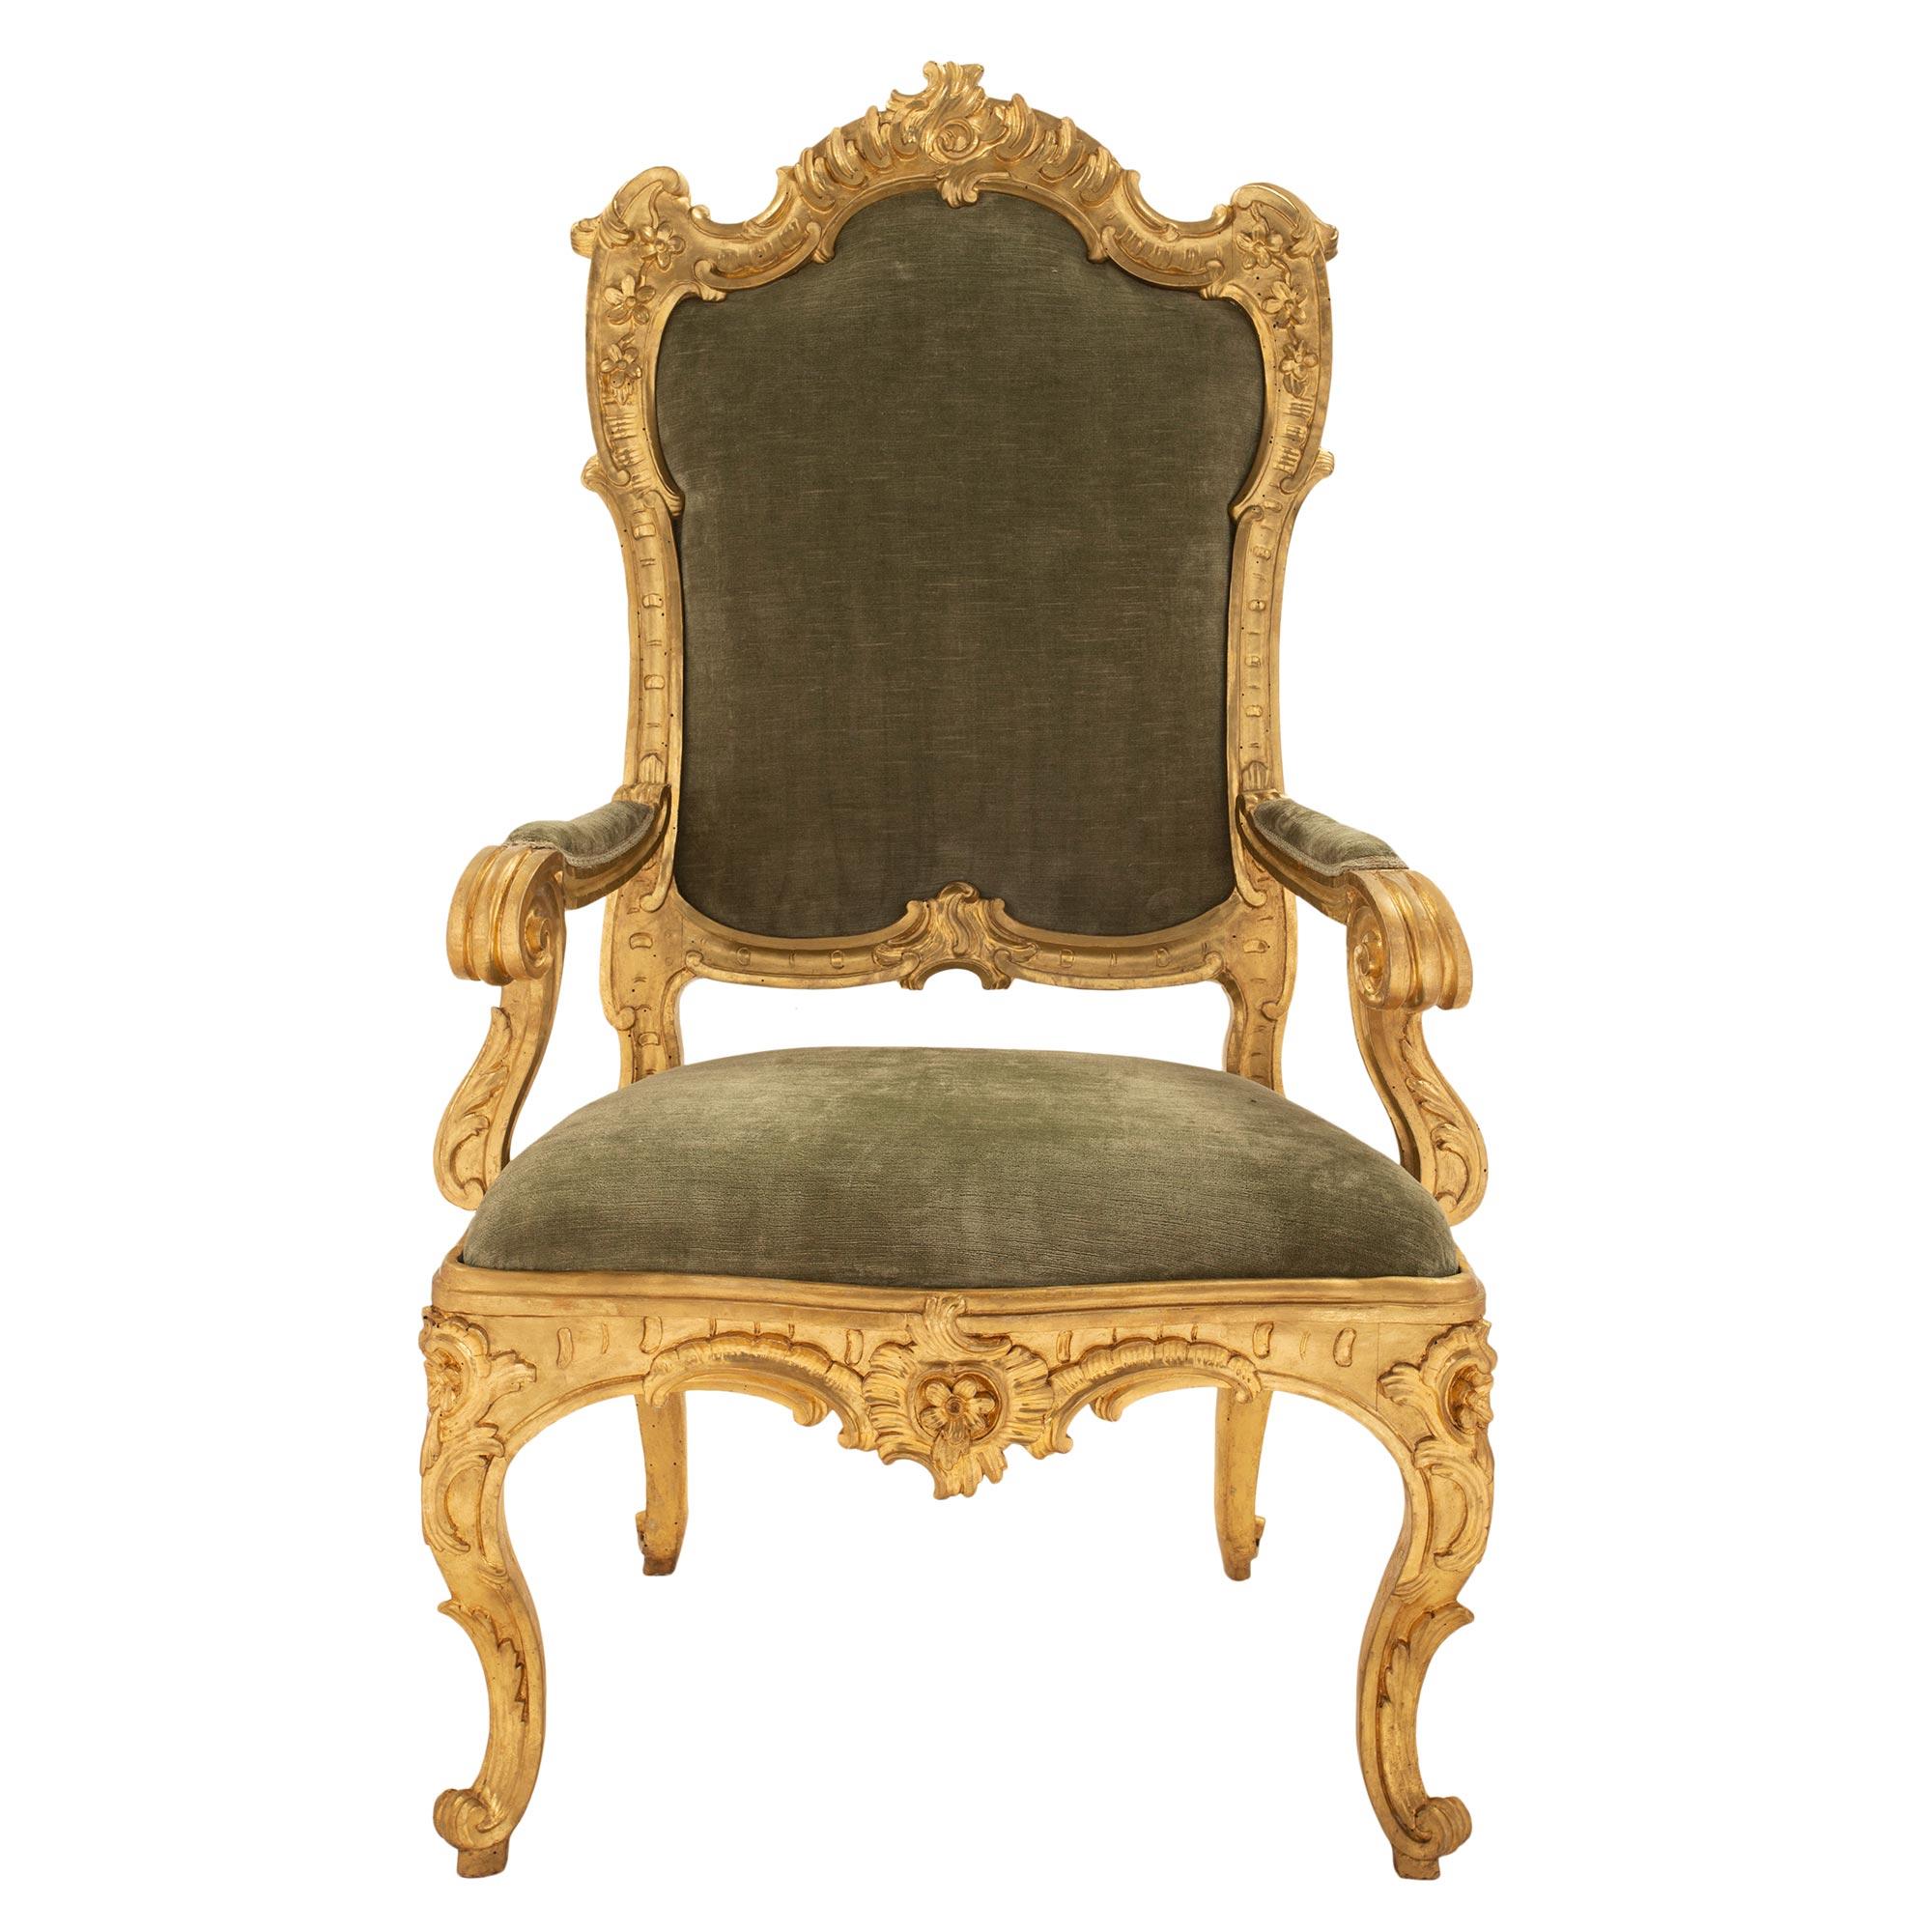 Une paire spectaculaire et de grande qualité de fauteuils trône en bois doré d'époque Louis XV du XVIIIe siècle. Cette paire de chaises est 